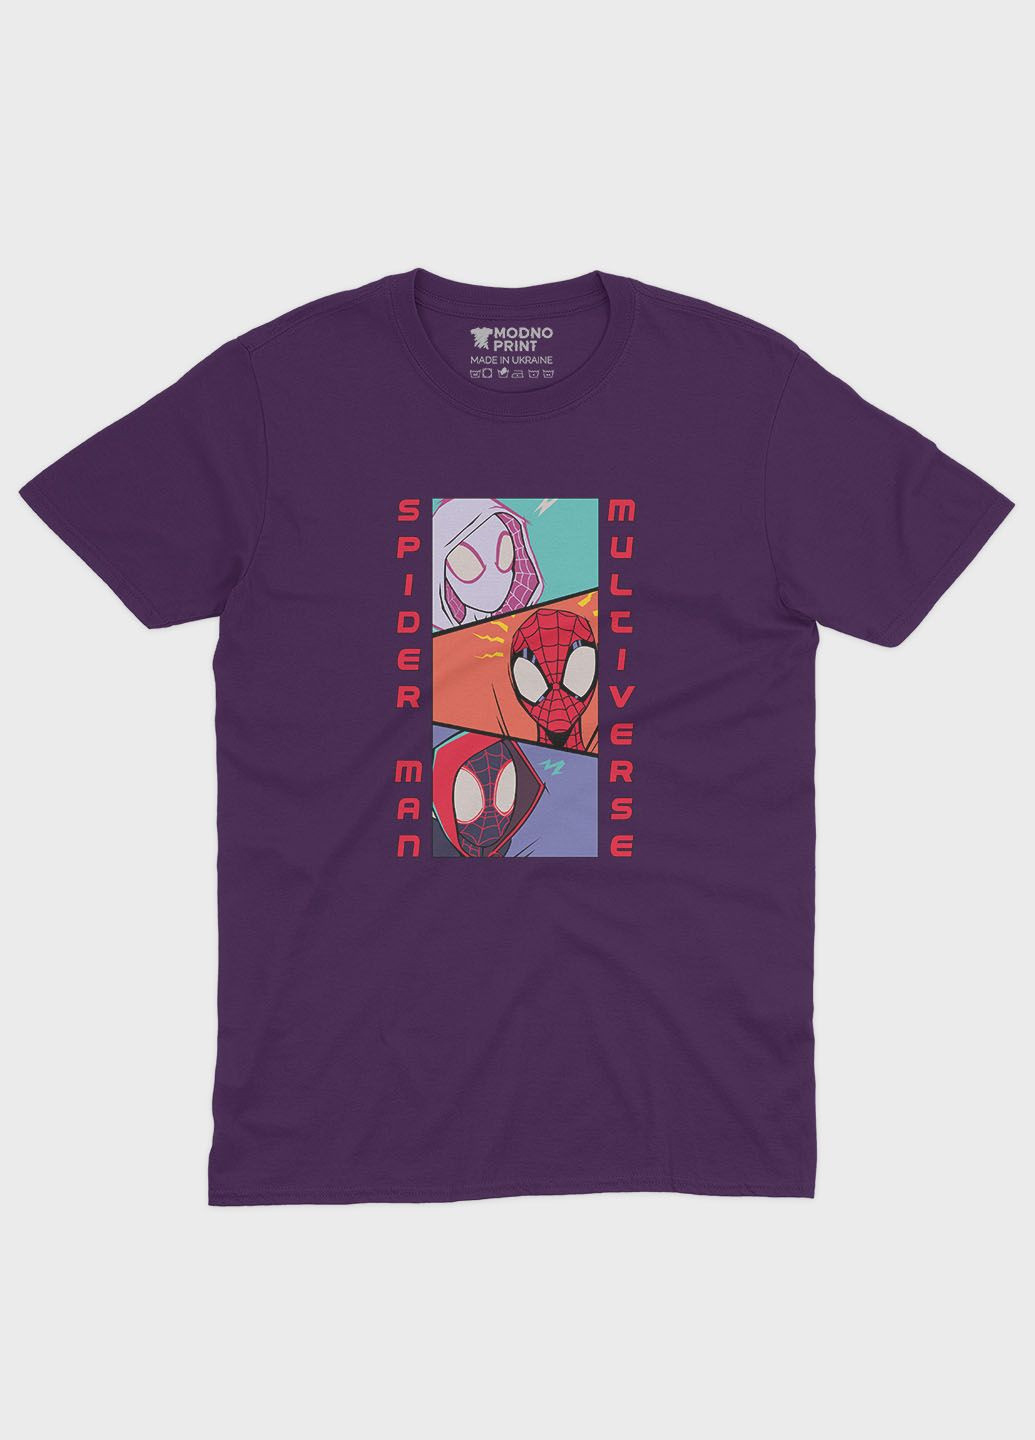 Фиолетовая демисезонная футболка для девочки с принтом супергероя - человек-паук (ts001-1-dby-006-014-047-g) Modno